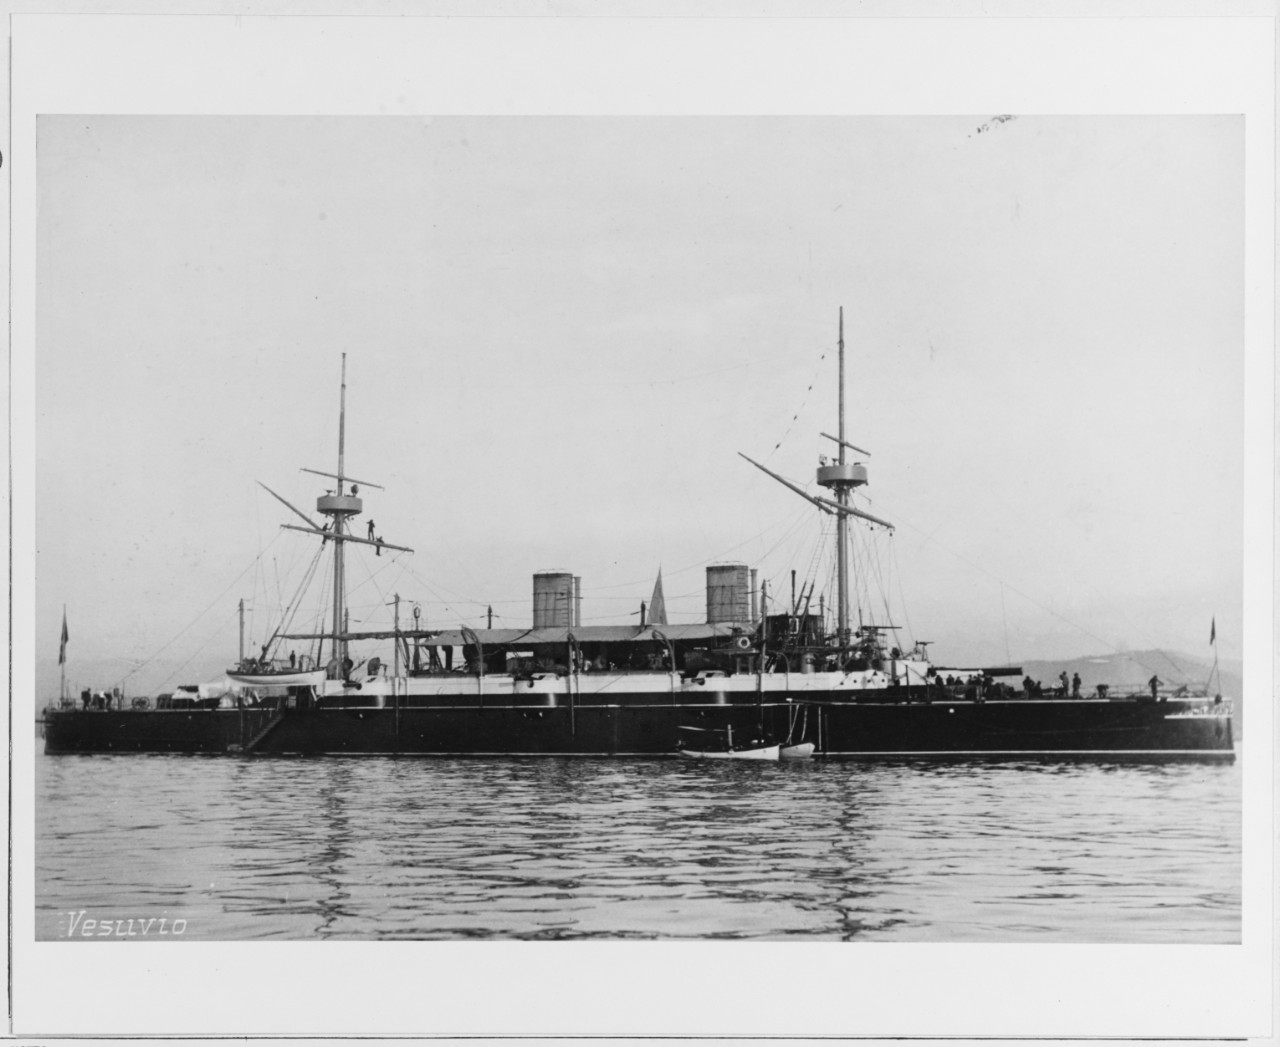 VESUVIO (Italian armored cruiser, 1886)